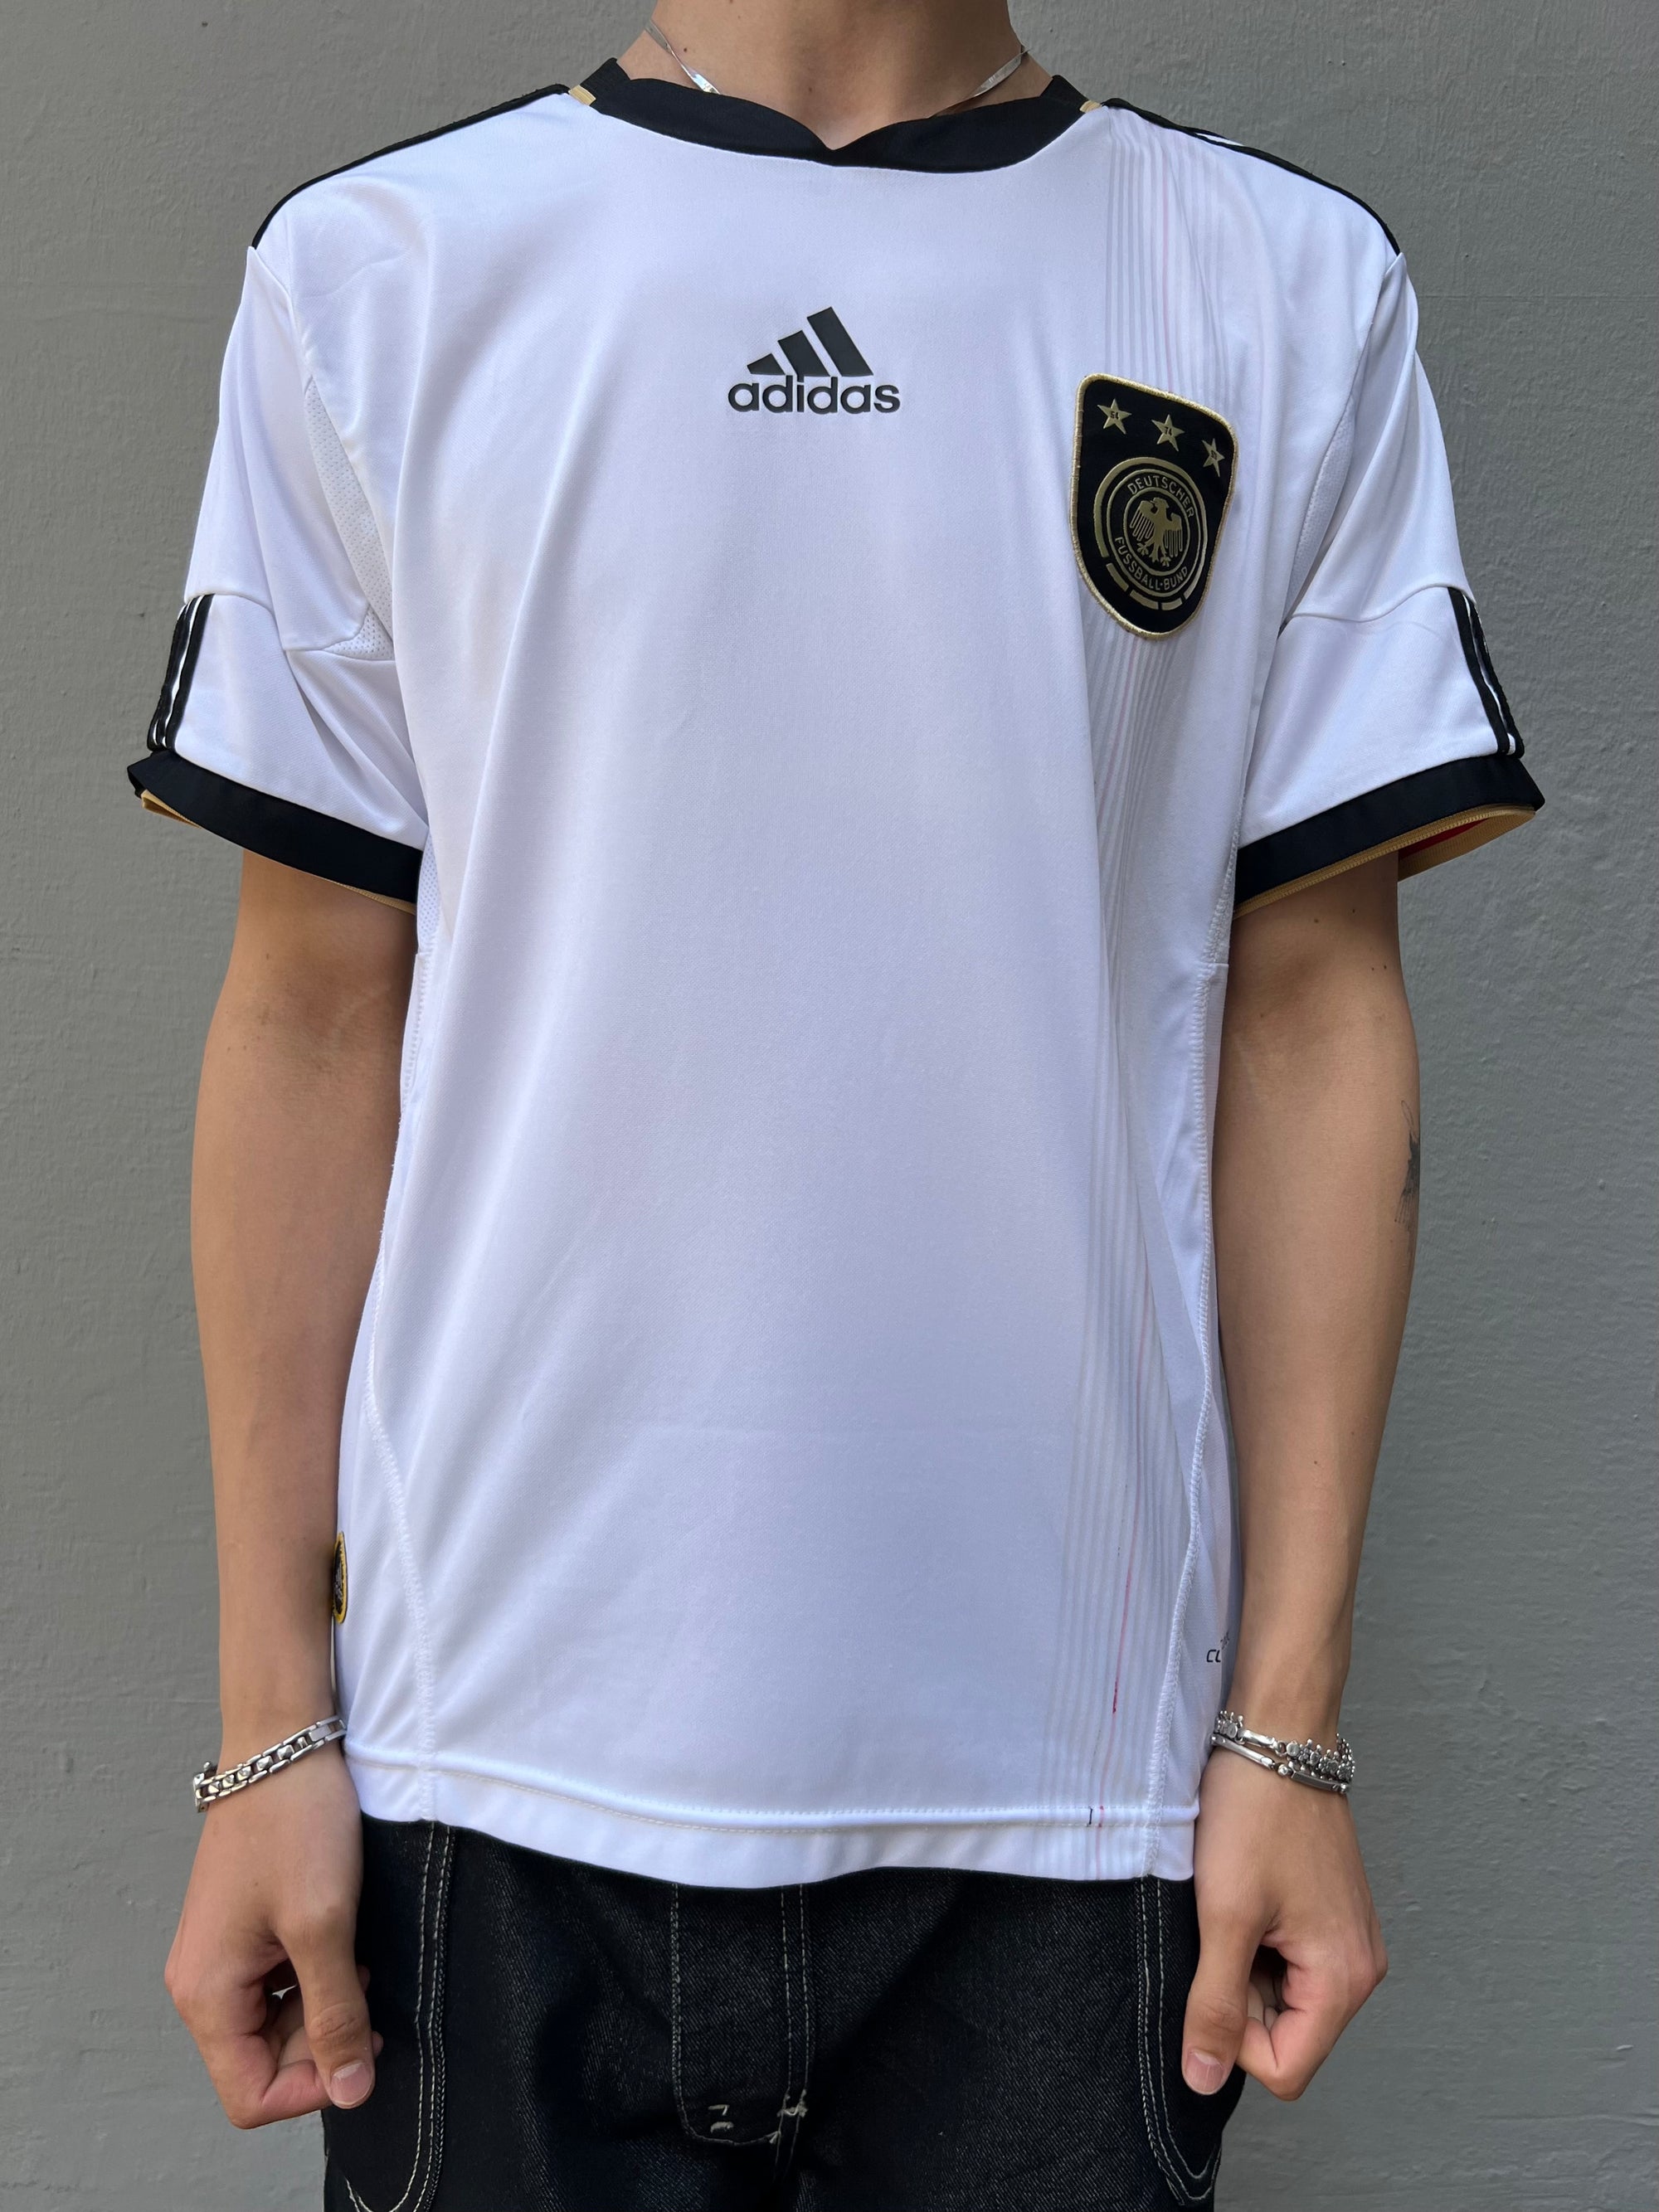 Zu sehen ist ein weißes Vintage Deutschland Trikot getragen vor einem grauen Hintergrund.